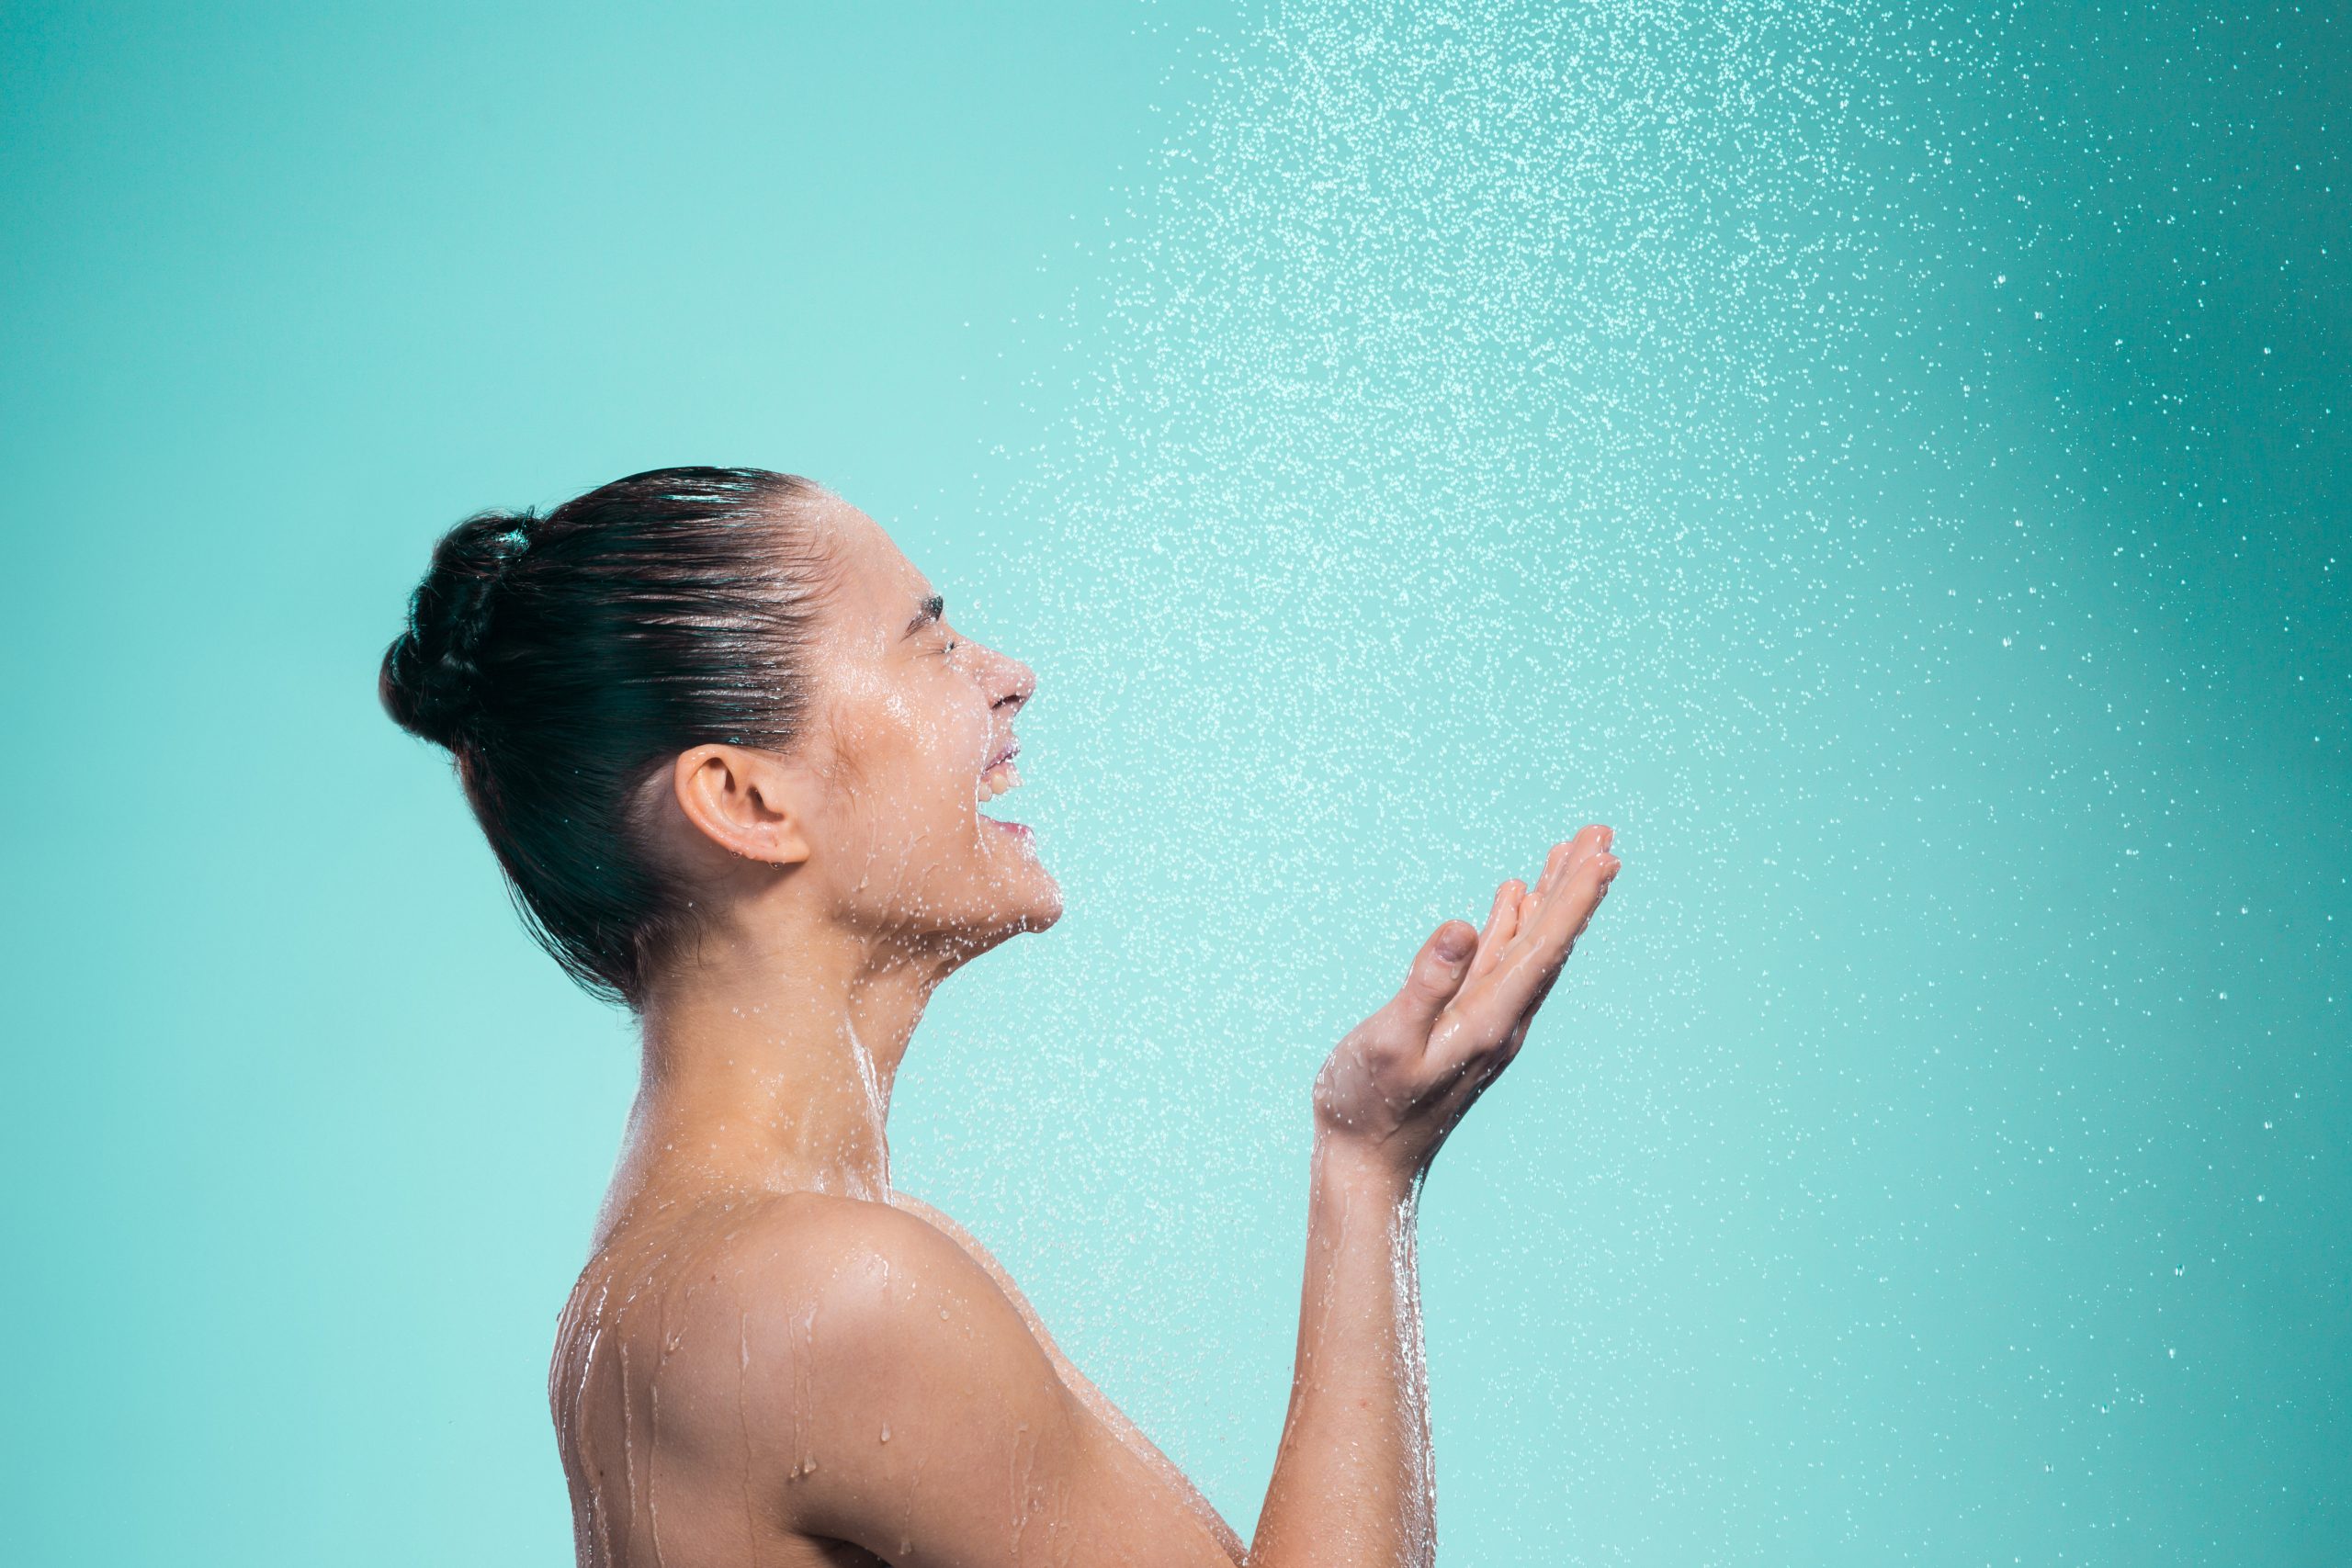 إذا كنت معتاداً الاستحمام يومياً فقد تصاب بالجفاف.. 3 طرق لتحافظ بها على بشرتك